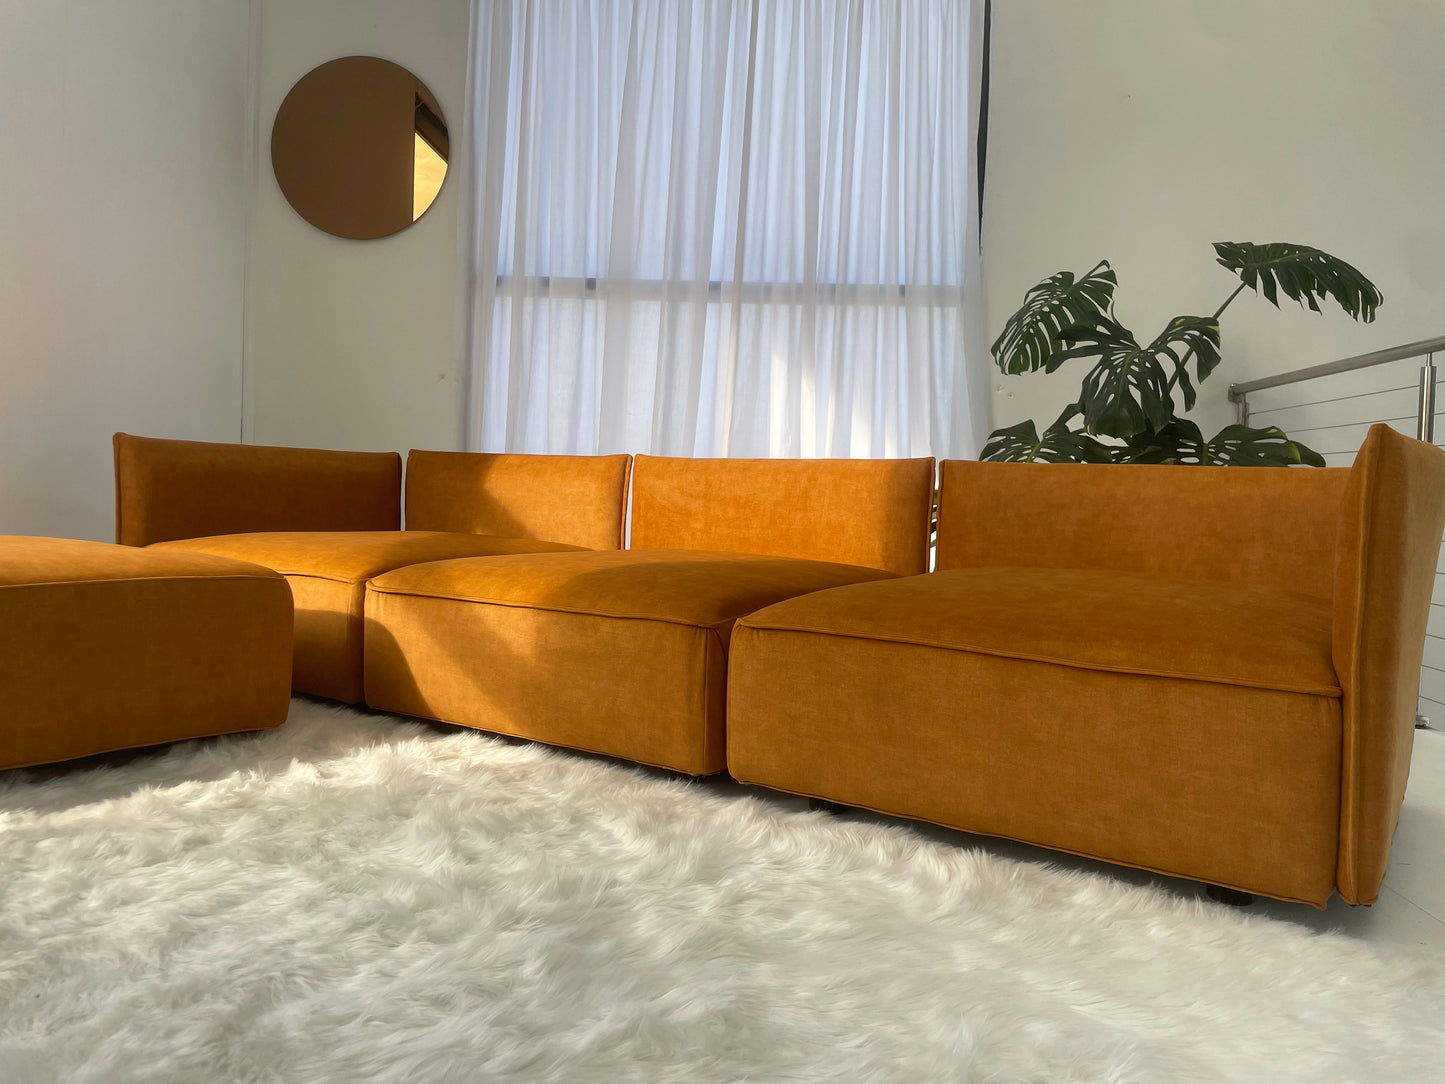 On Hold - Caramel Modular Sofa